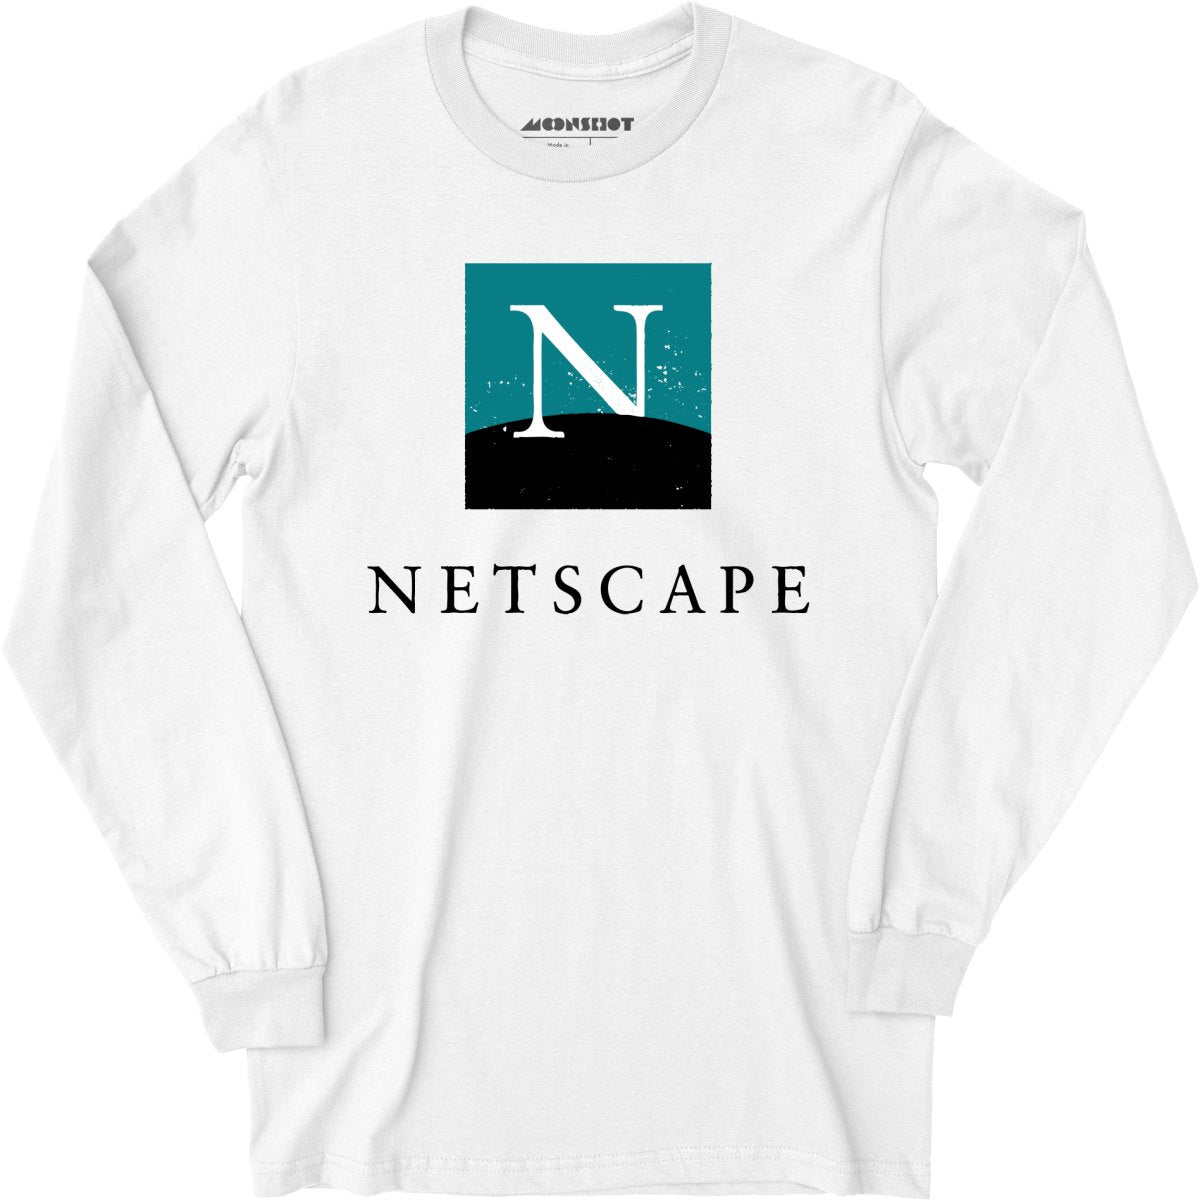 Netscape - Vintage Internet - Long Sleeve T-Shirt